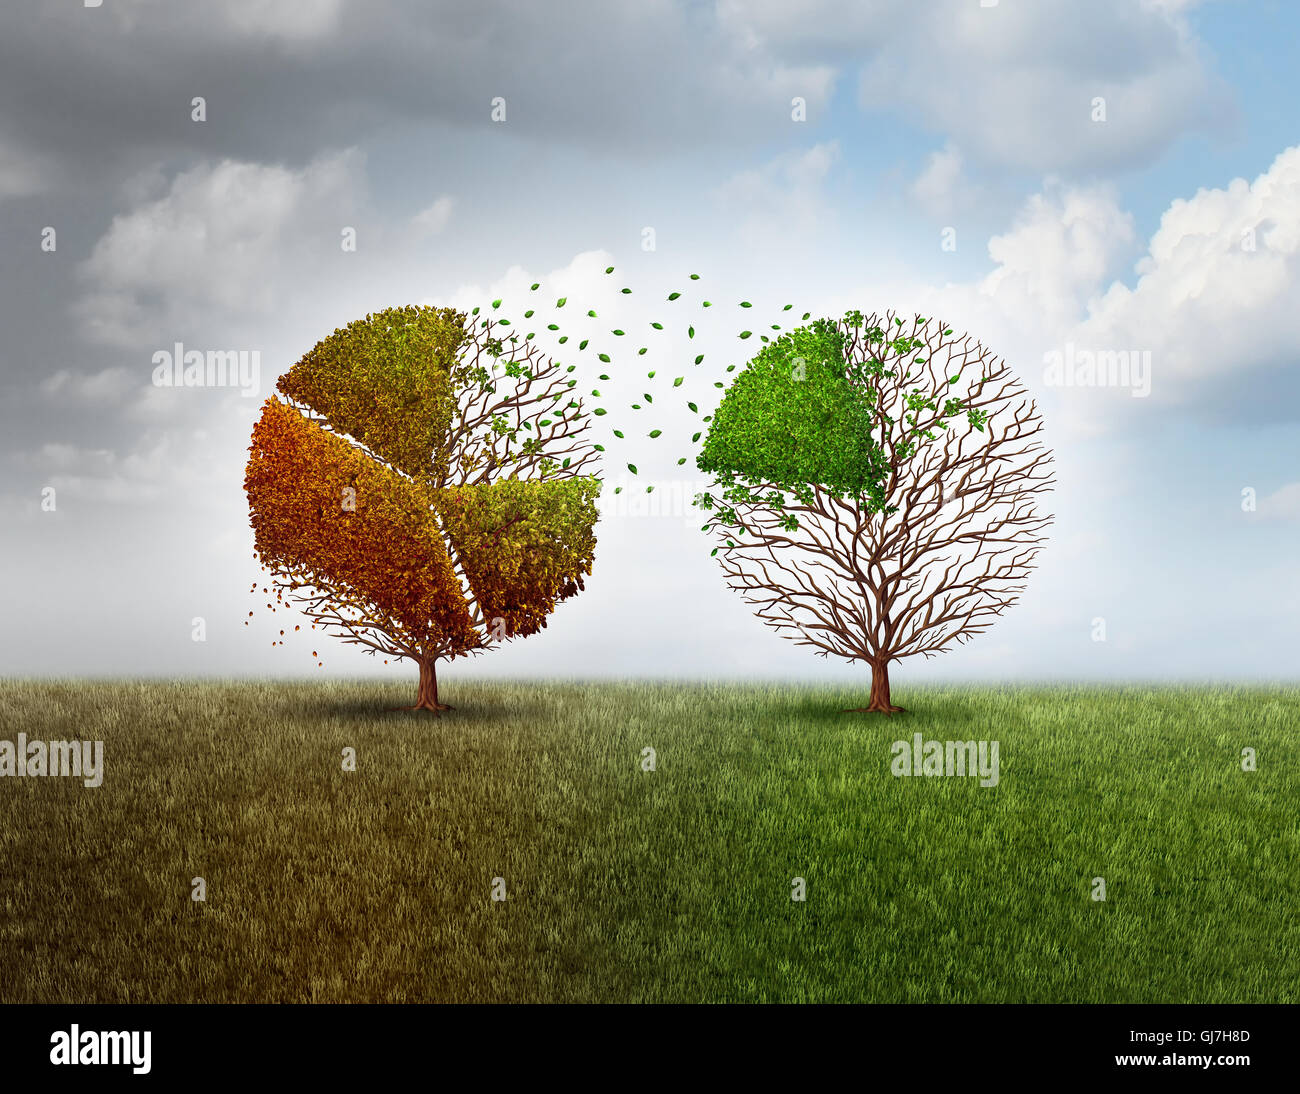 Investitionen in neue Unternehmen und investieren in eine wirtschaftliche Zukunft und Veräußerung in alten Industrie als finanzielle Metapher mit einem alten Baum Finanzen Kreisdiagramm grafisch Finanzierung eine andere lebendige grünen Baum mit 3D Abbildung Elementen geprägt. Stockfoto